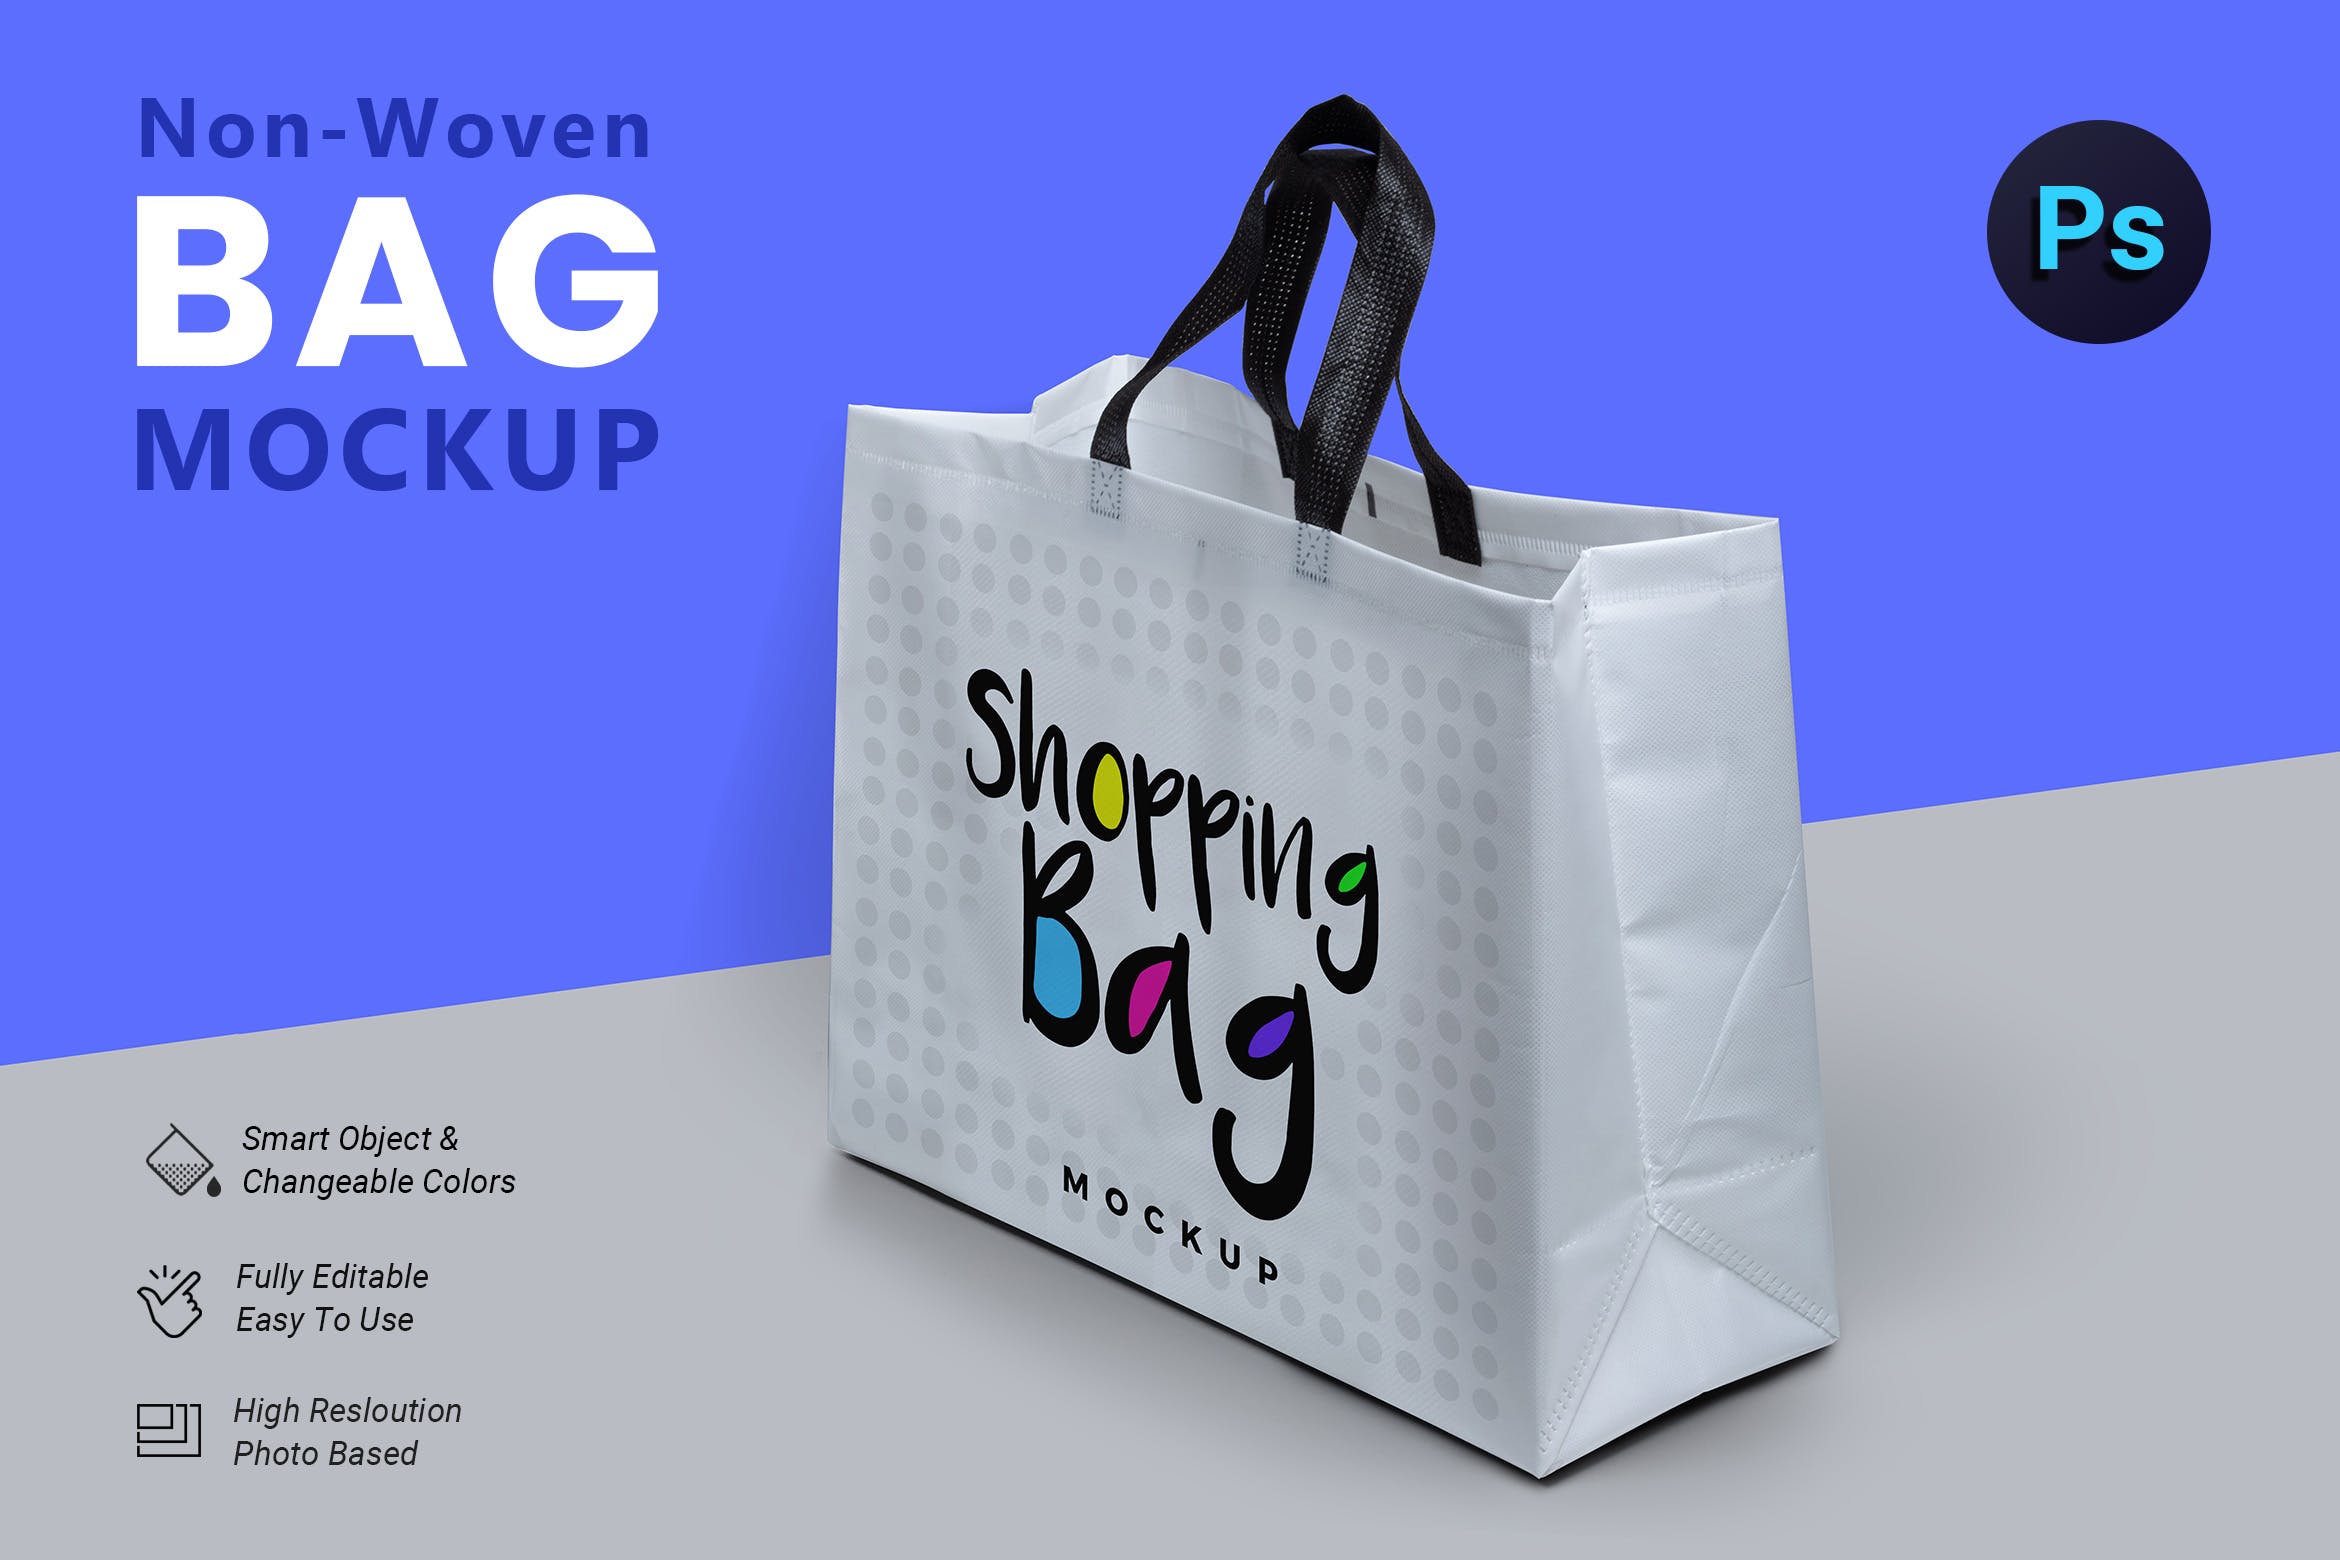 无纺布购物袋外观设计图蚂蚁素材精选 Non Woven Bag Mockup插图